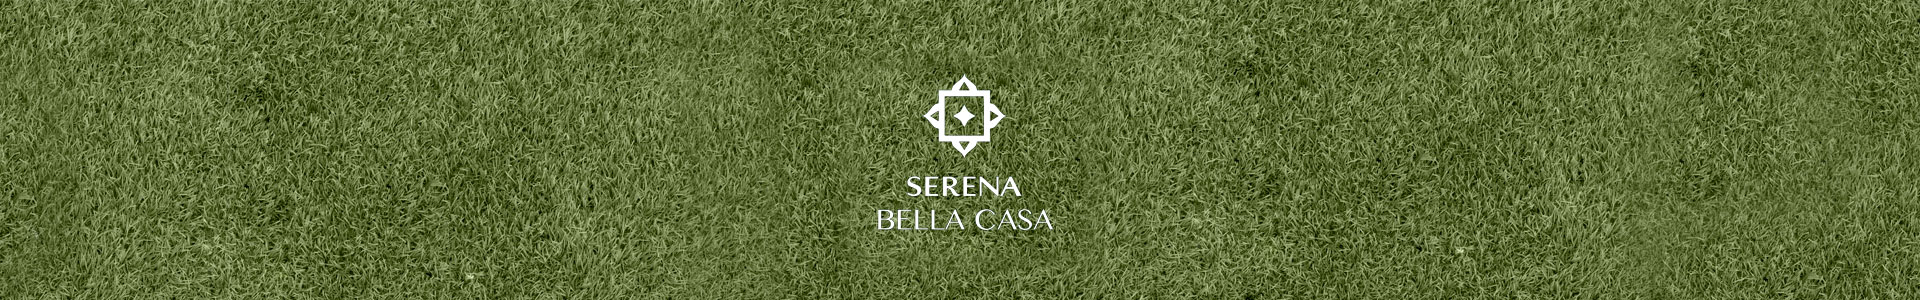 Serena Bella Casa Location Map